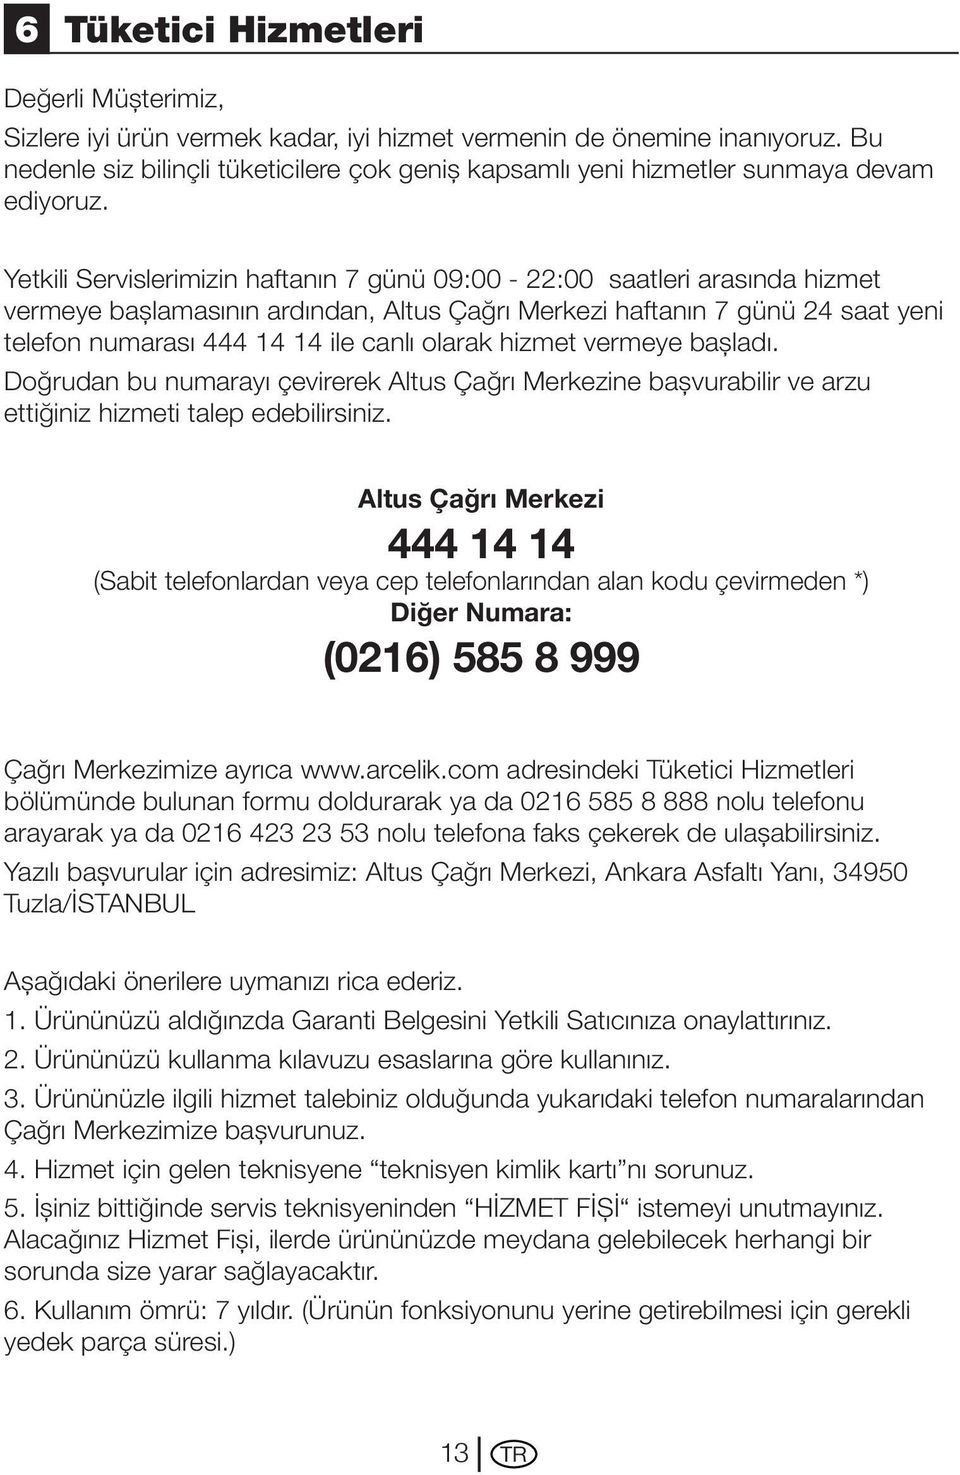 Yetkili Servislerimizin haftanın 7 günü 09:00-22:00 saatleri arasında hizmet vermeye başlamasının ardından, Altus Çağrı Merkezi haftanın 7 günü 24 saat yeni telefon numarası 444 14 14 ile canlı